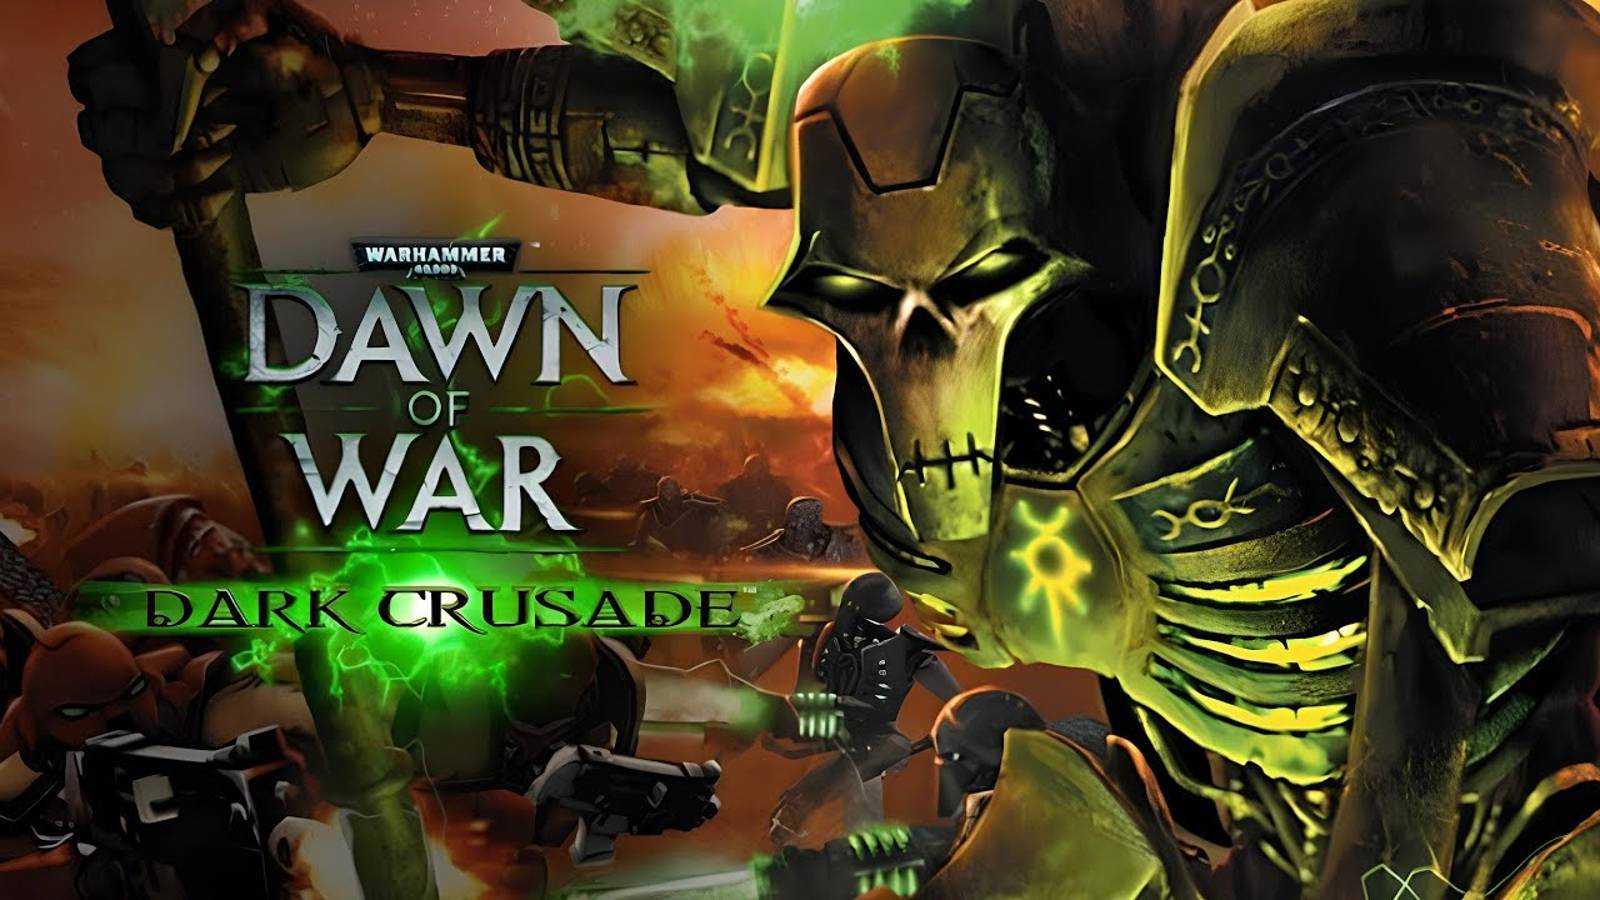 Warhammer 40,000 Dawn of War - Dark Crusade. Тау. Горы Ван де Мар